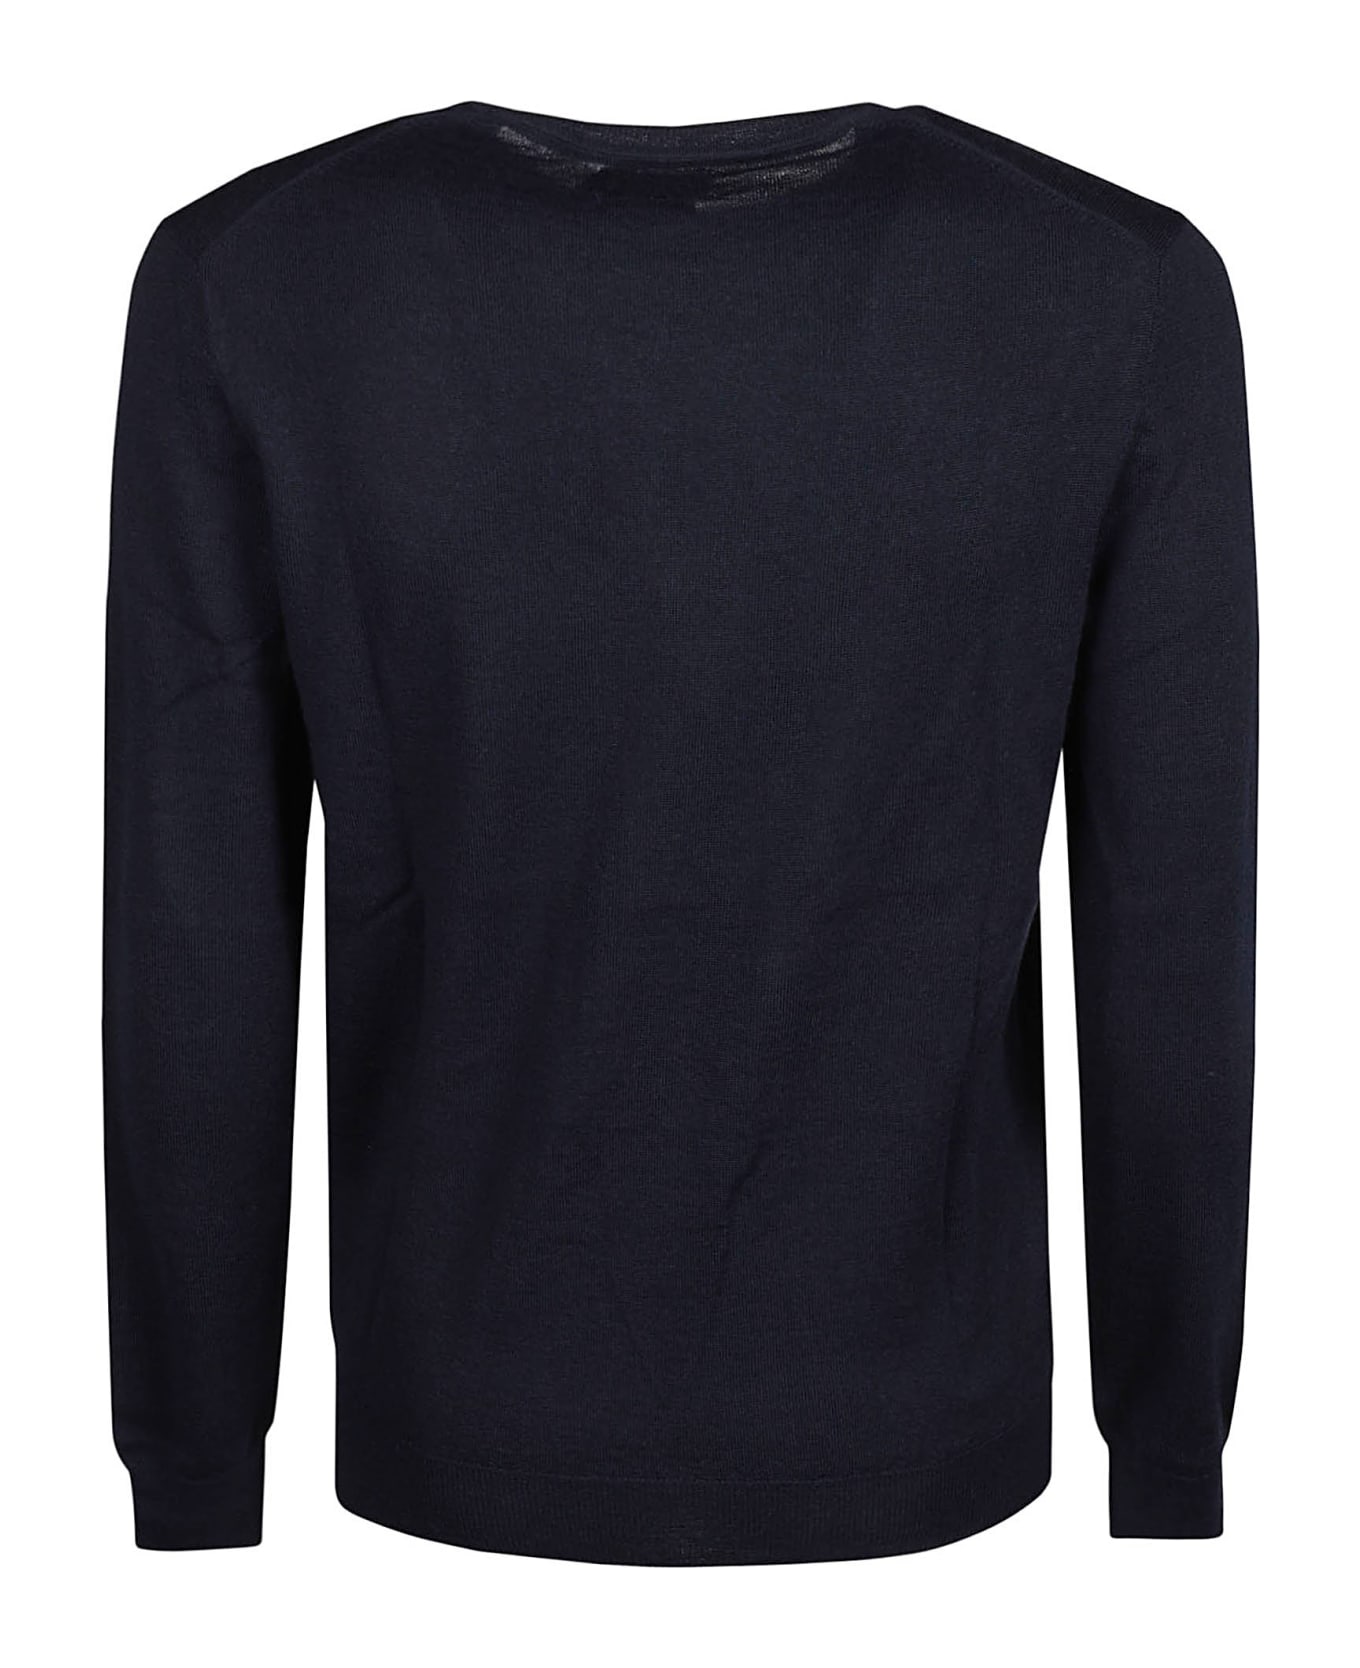 Polo Ralph Lauren Long Sleeve Sweater - Hunter Navy